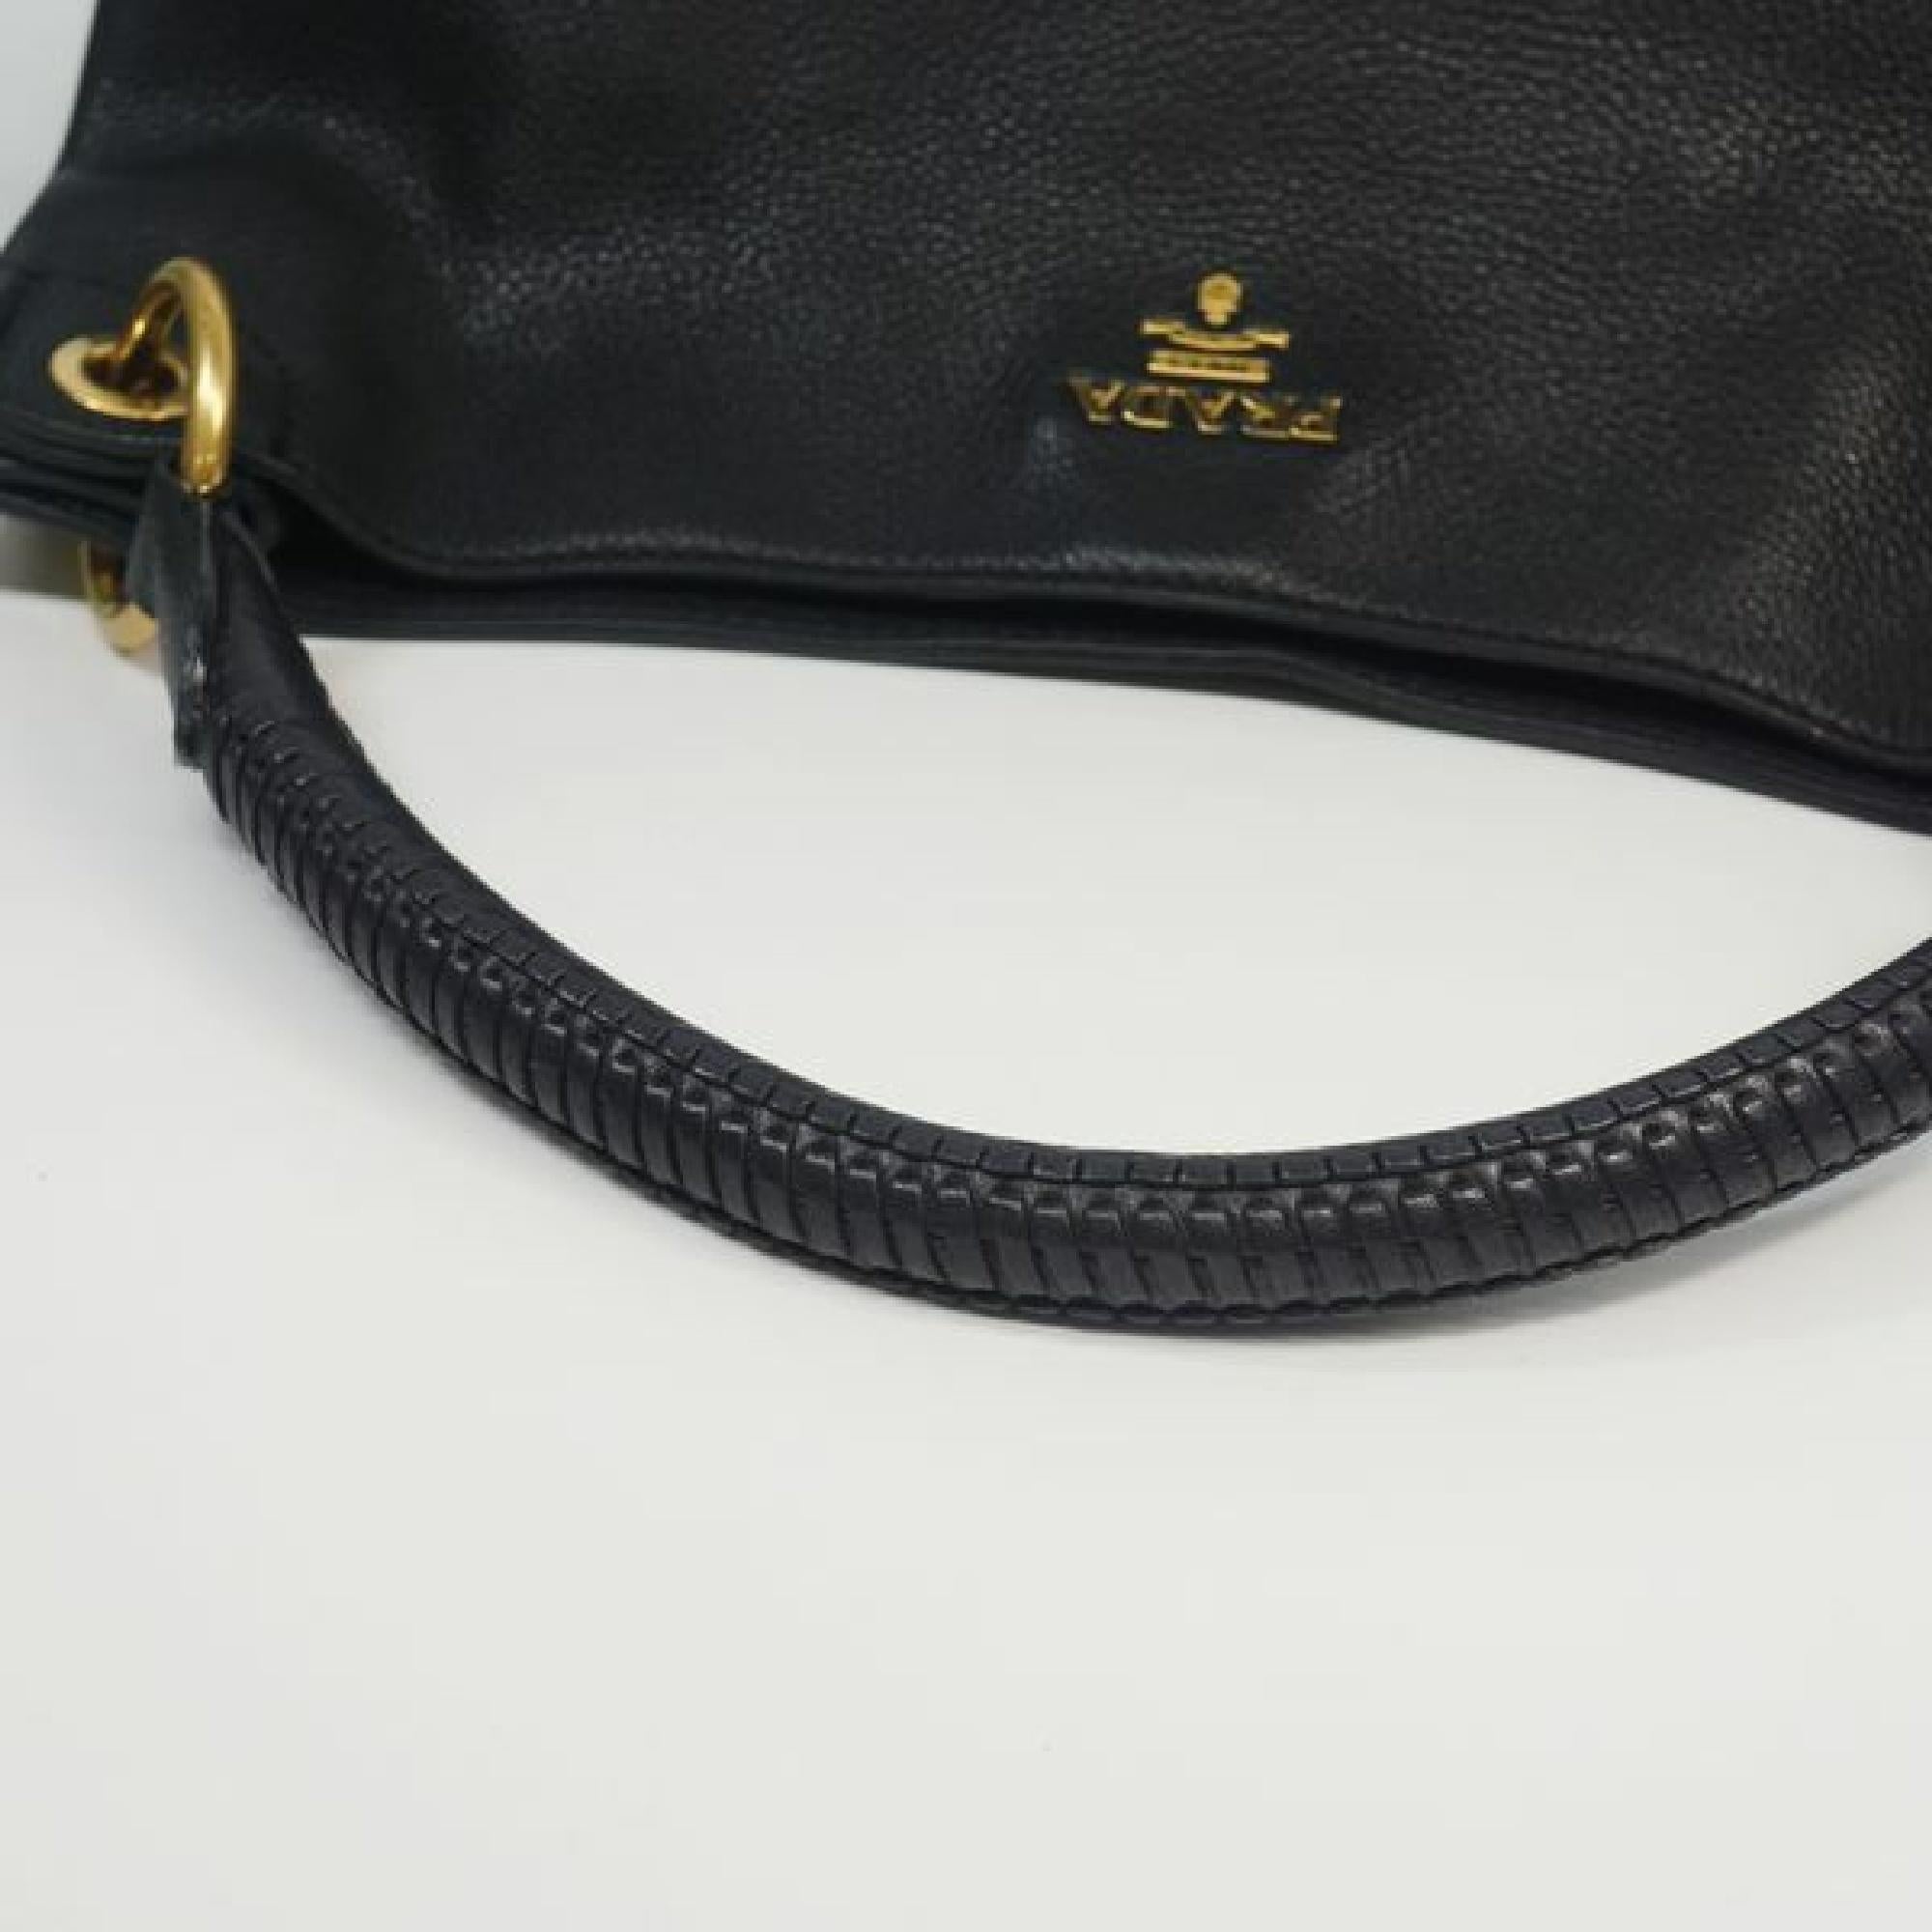 PRADA one shoulder Womens shoulder bag BR4712 black x gold hardware 2